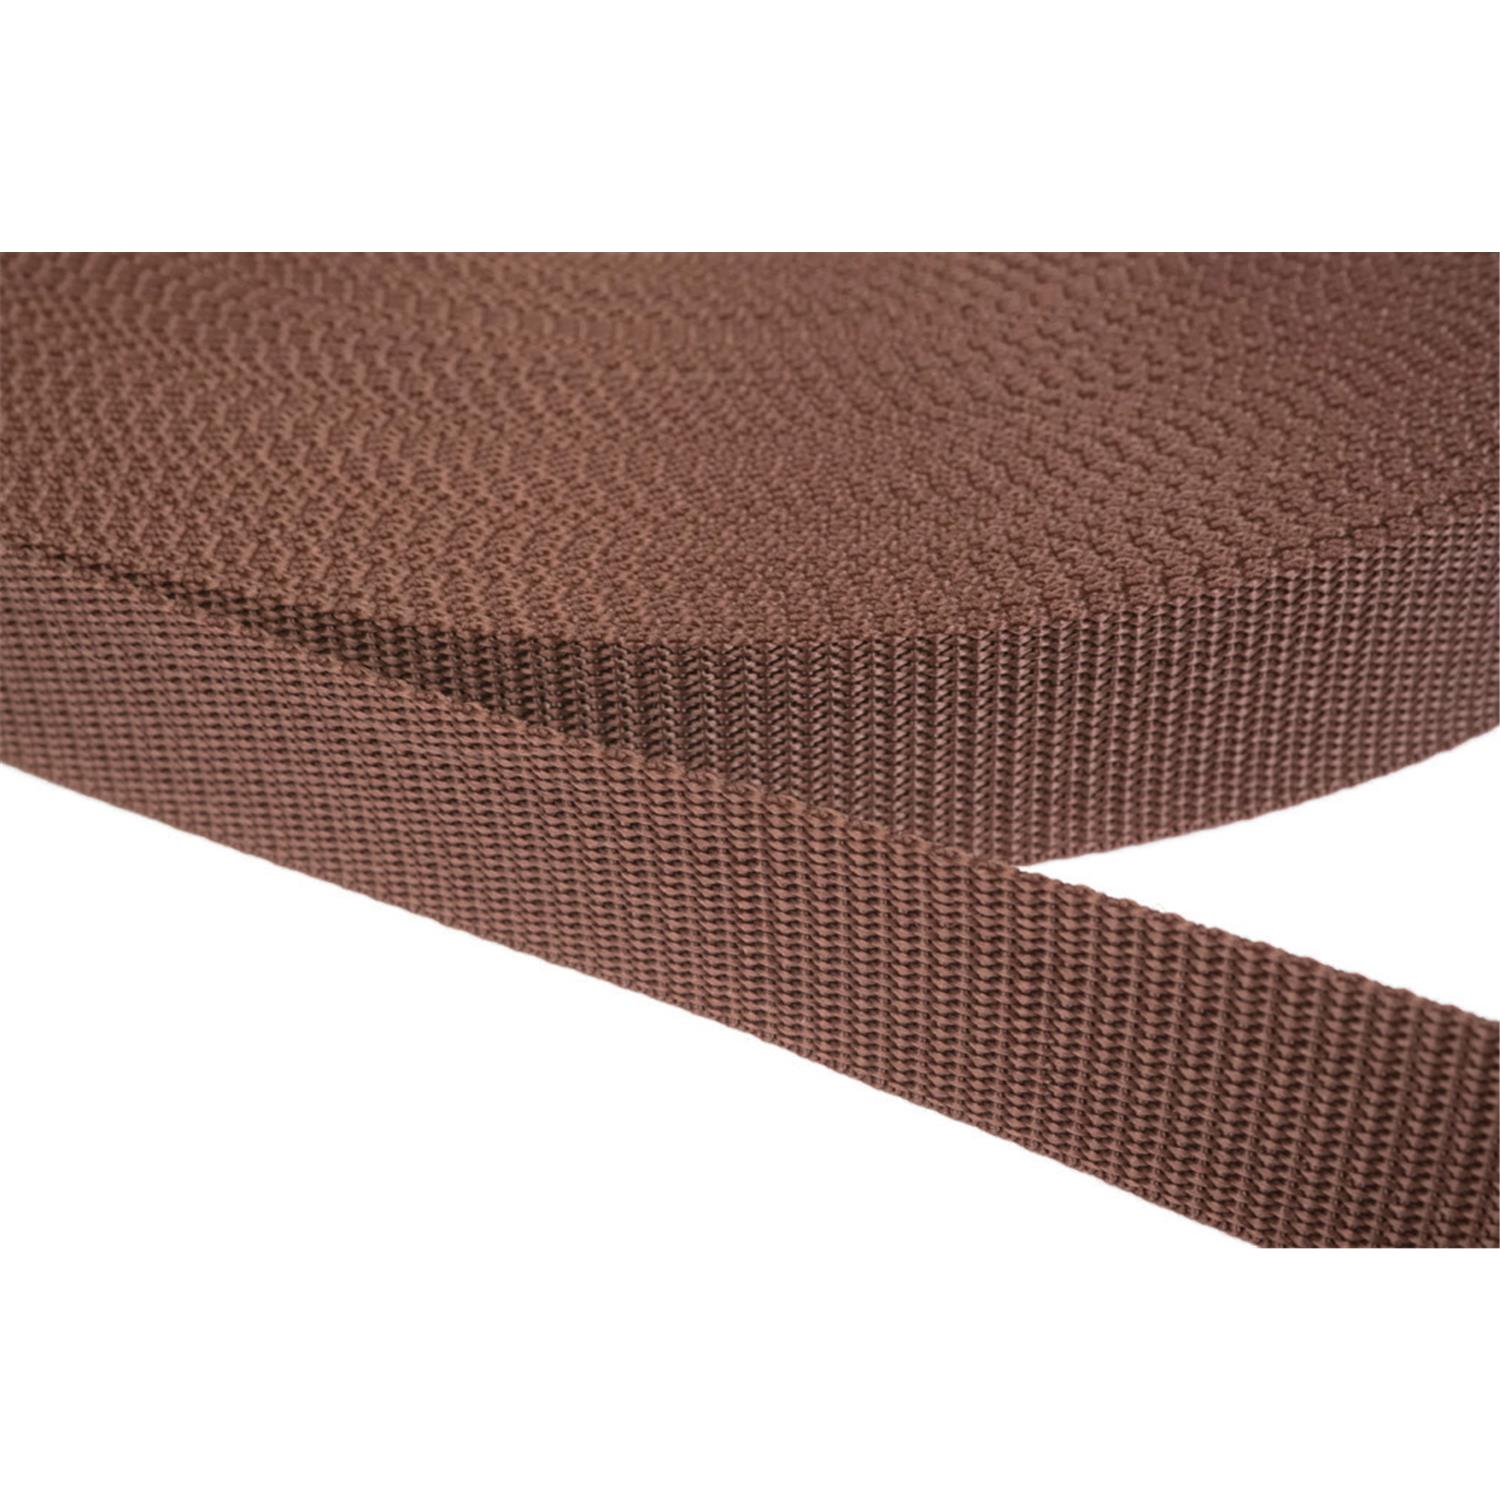 Gurtband 25mm breit aus Polypropylen in 41 Farben 07 - braun 6 Meter